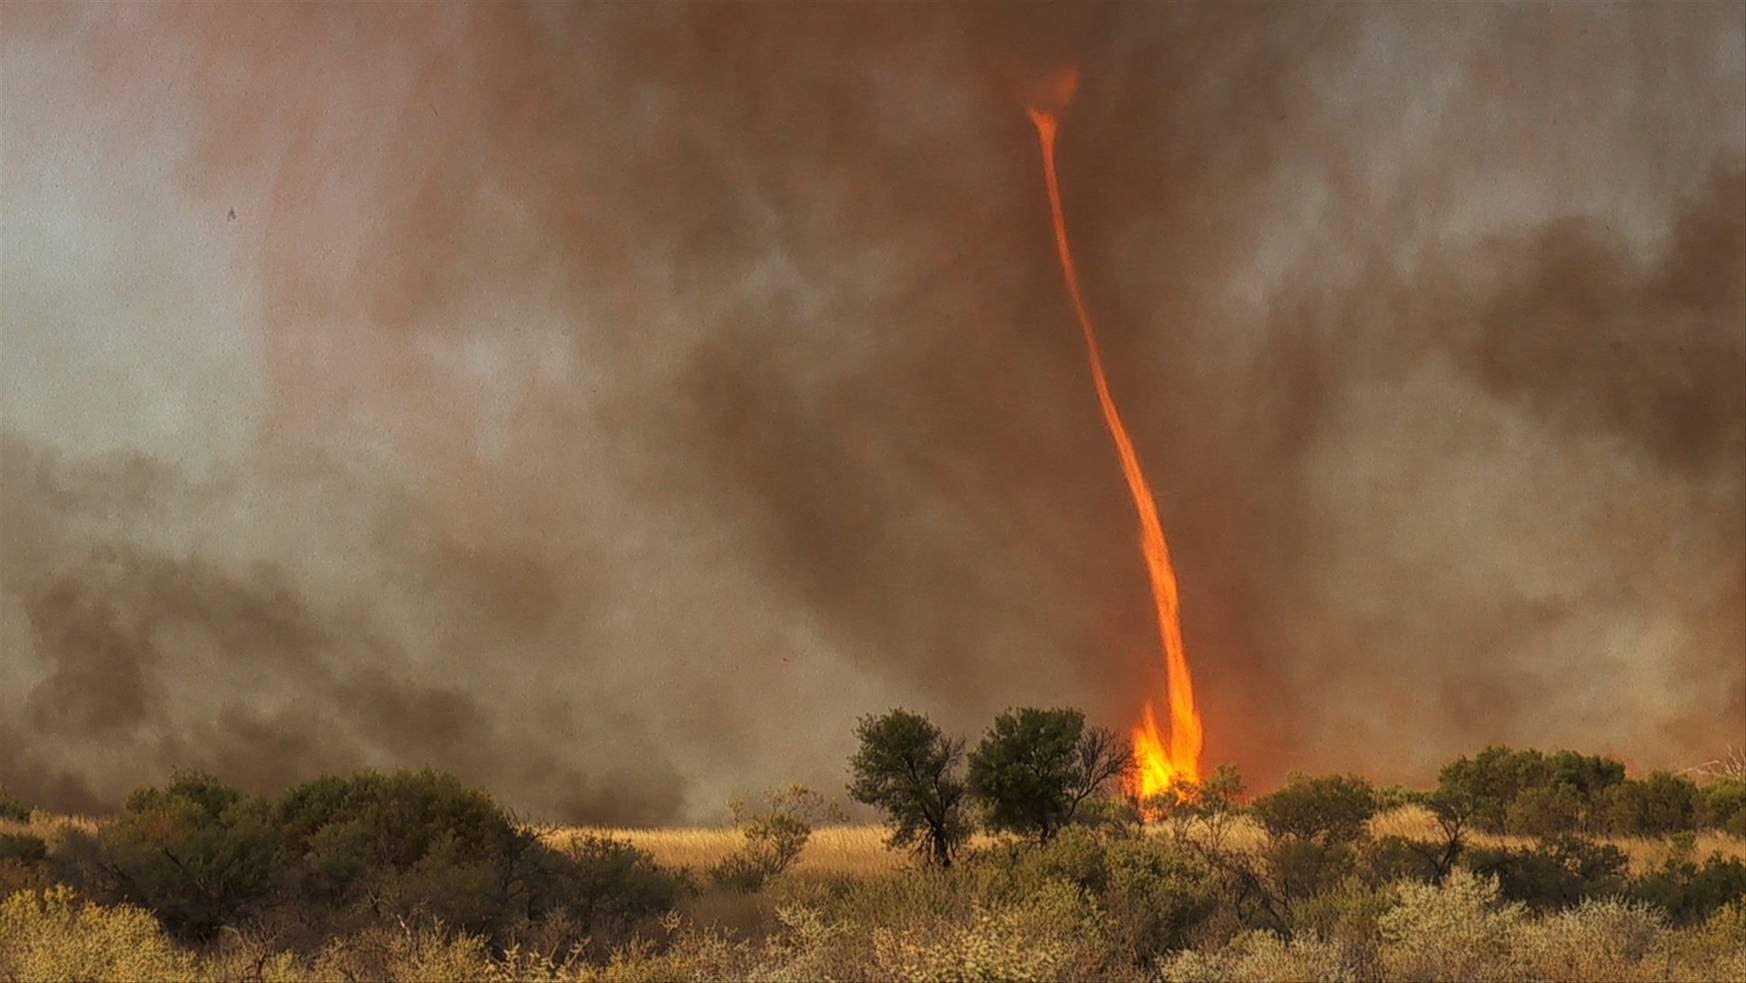 Fire tornado Australia HD -clearest ever capture in nature